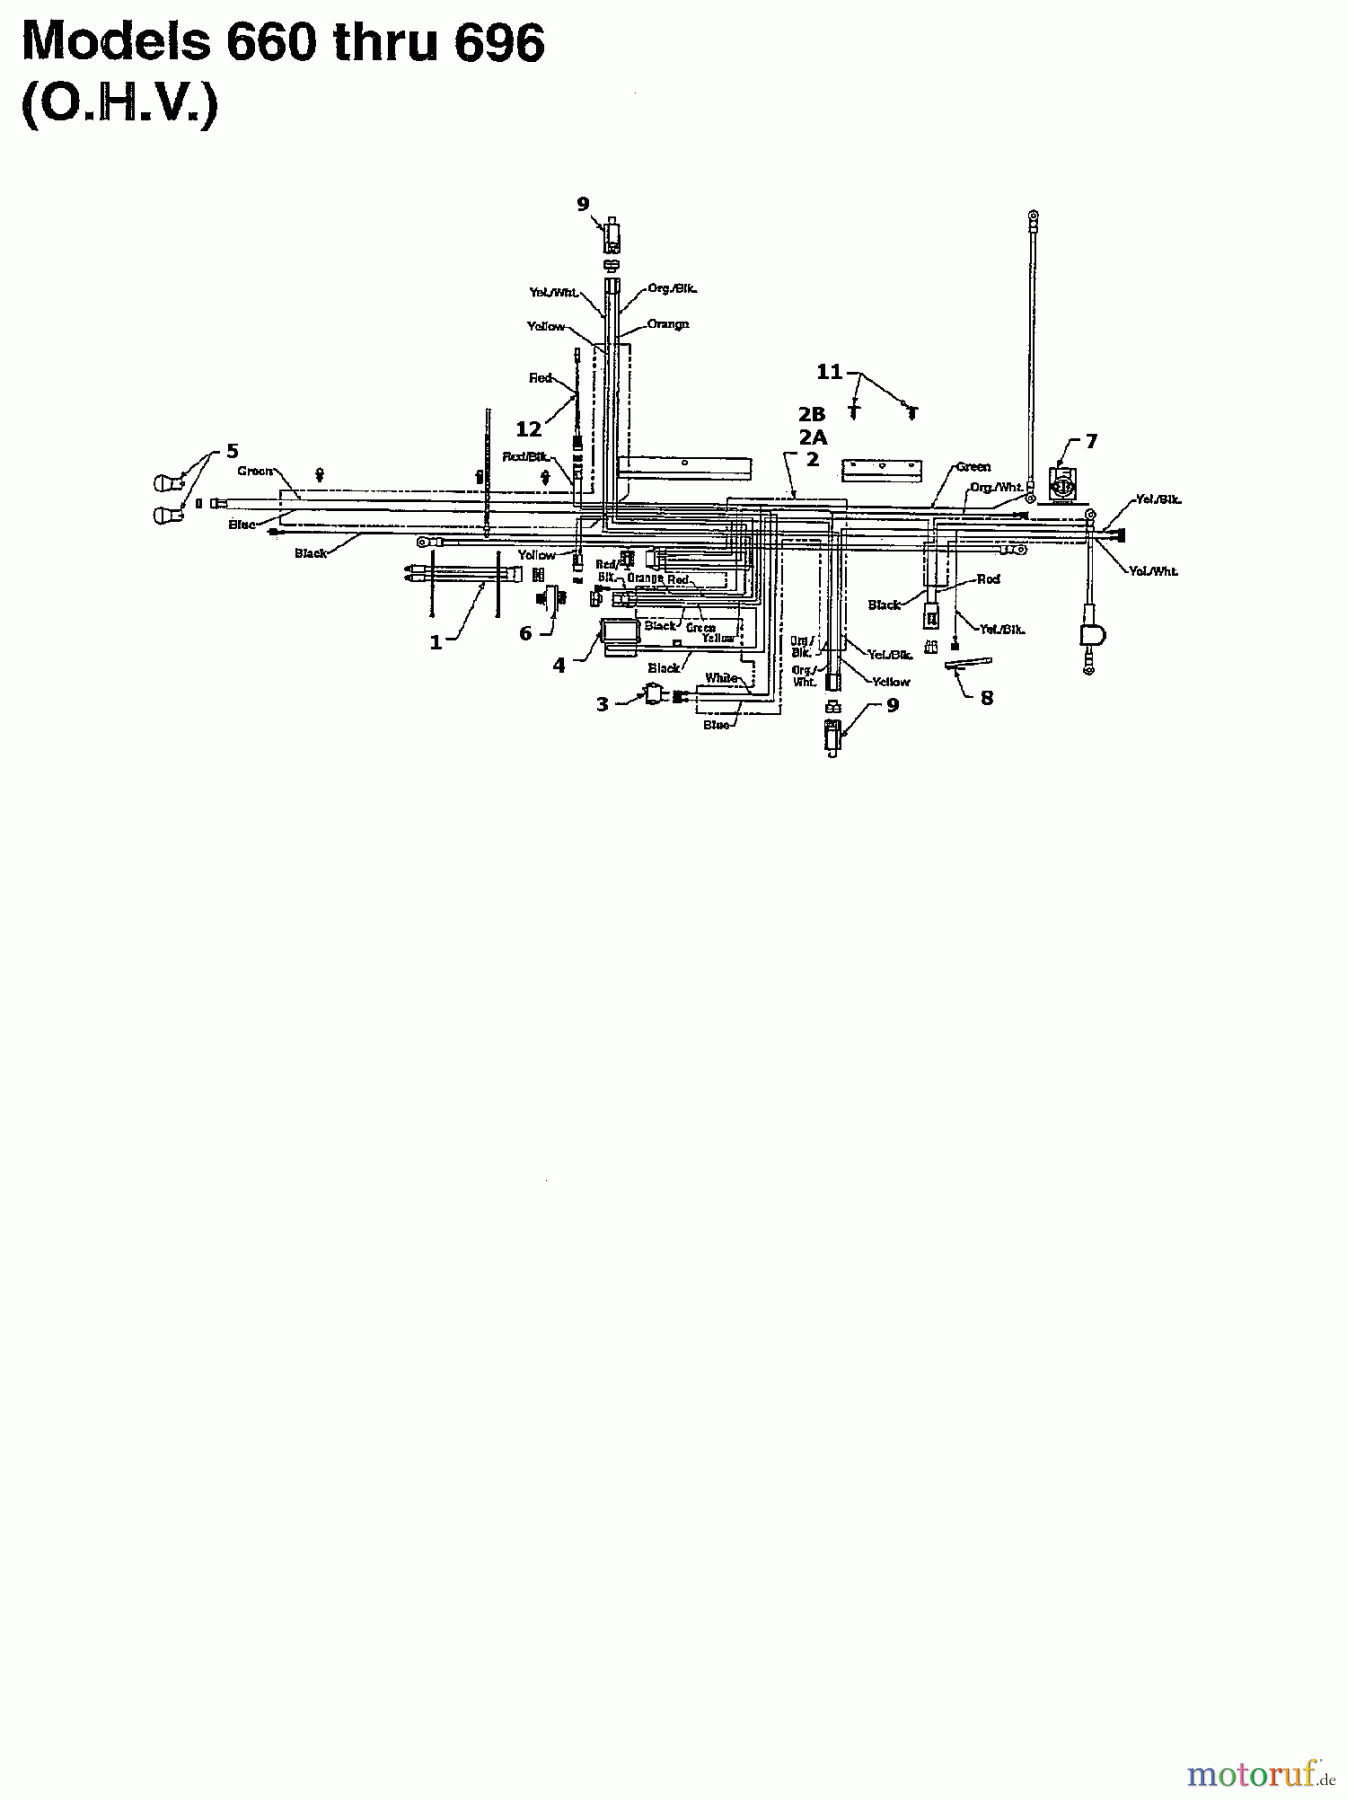  MTD Rasentraktoren H 130 136N695F678  (1996) Schaltplan für O.H.V.